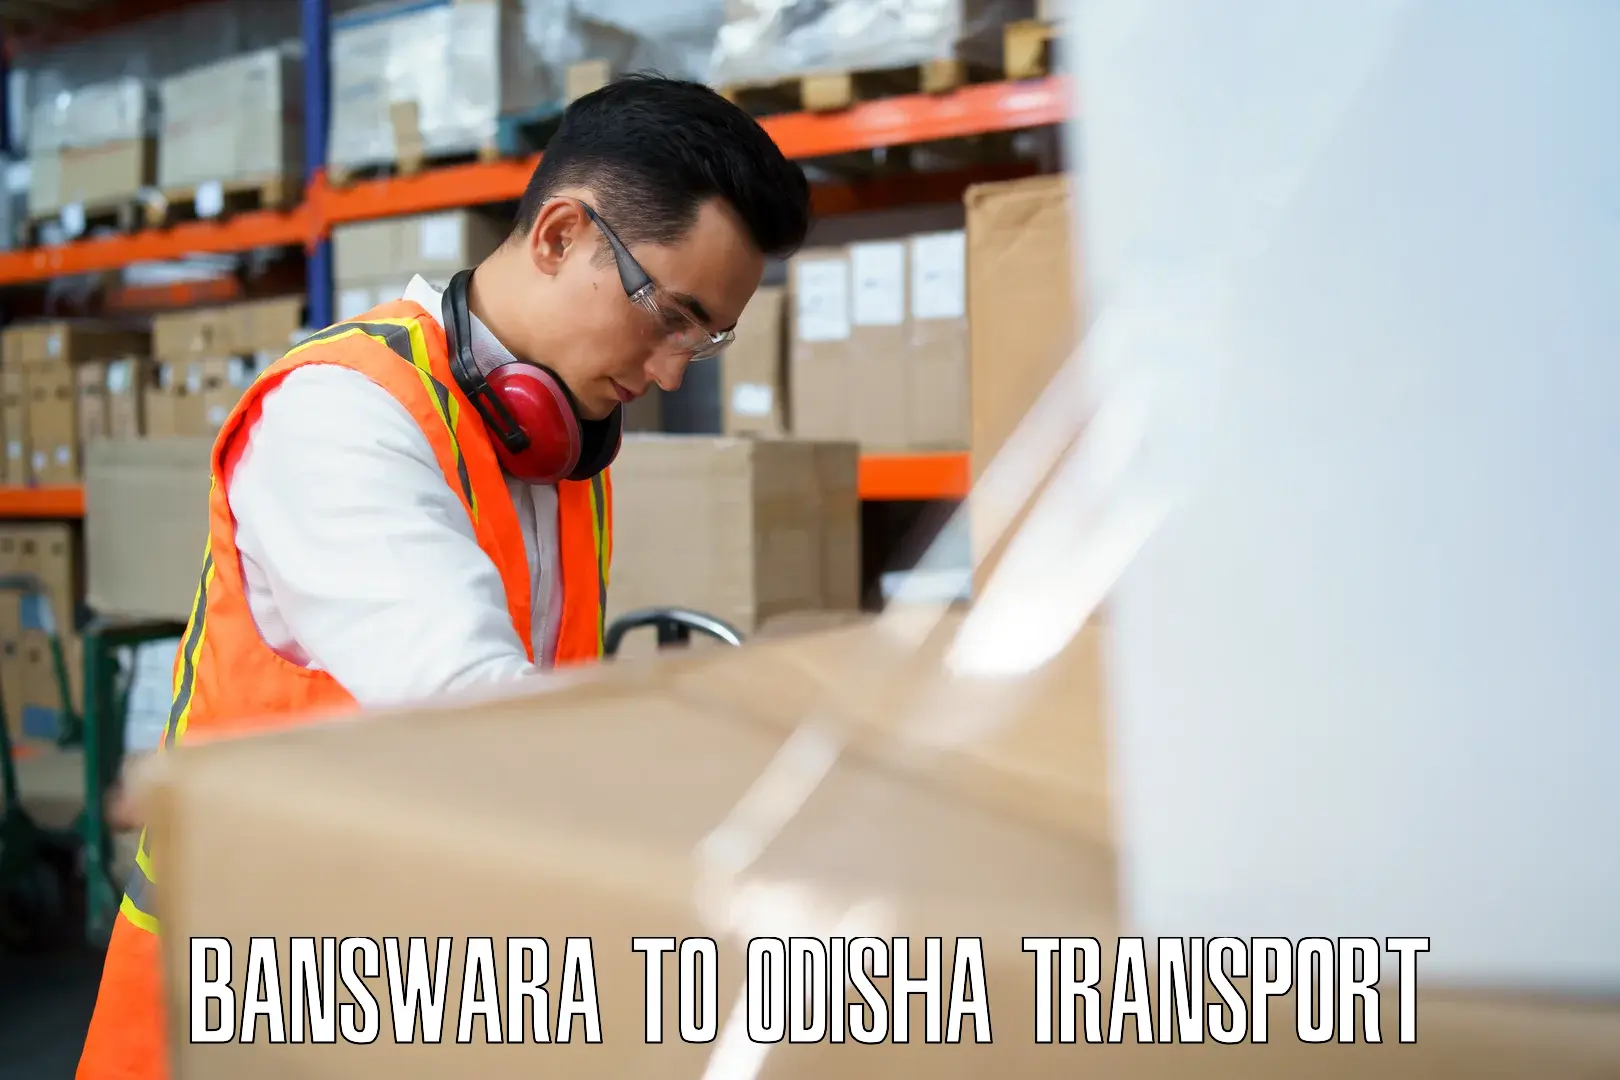 Furniture transport service Banswara to Boudh